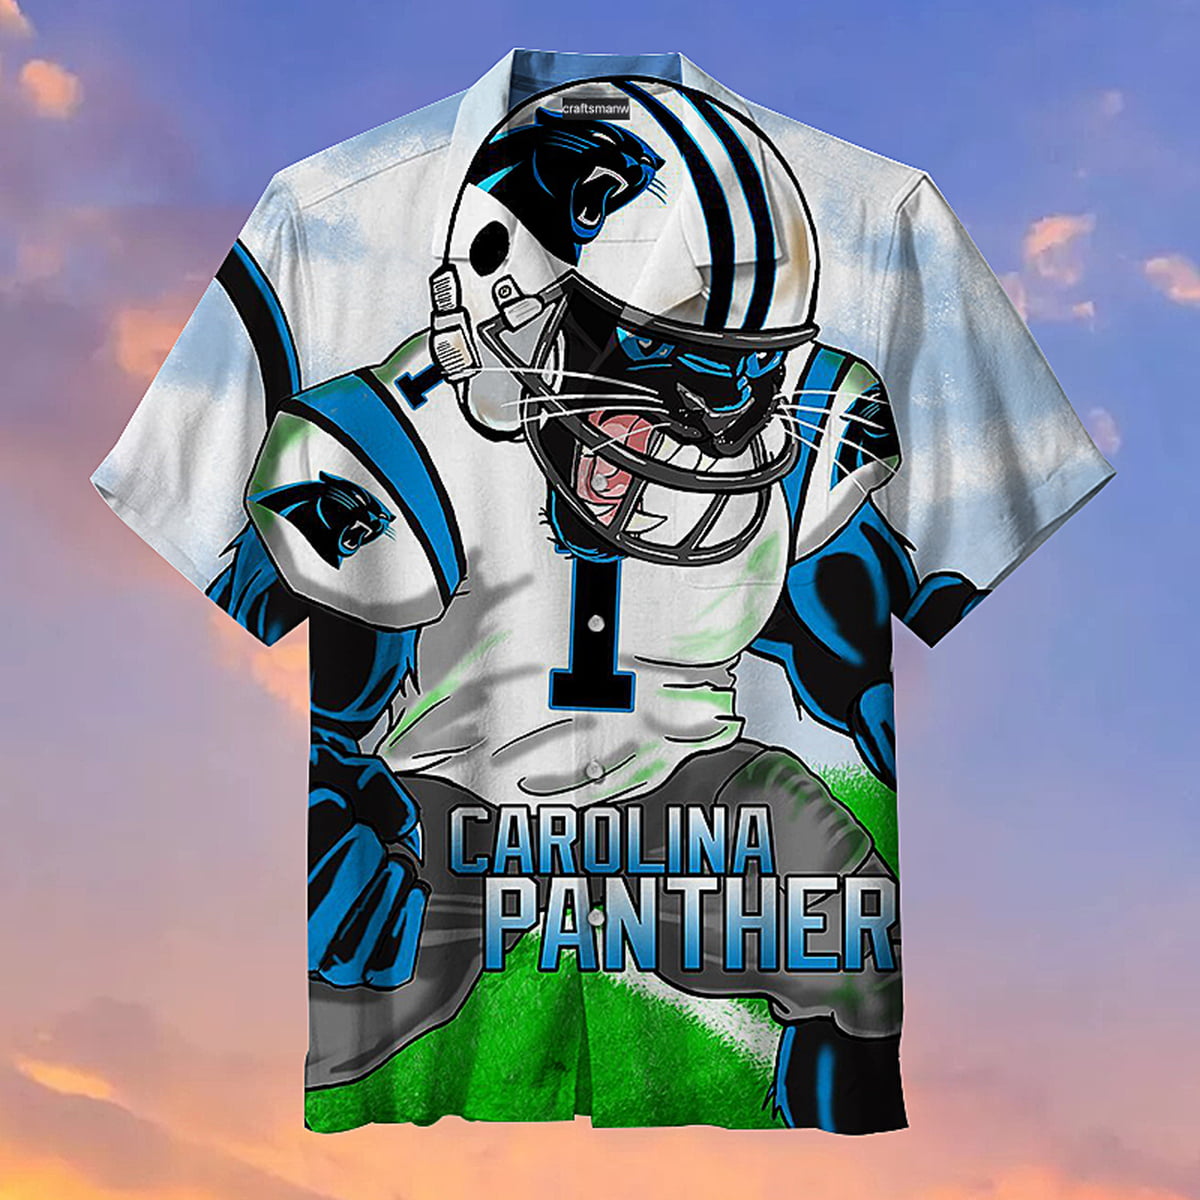 Carolina Panthers Hawaiian Shirt